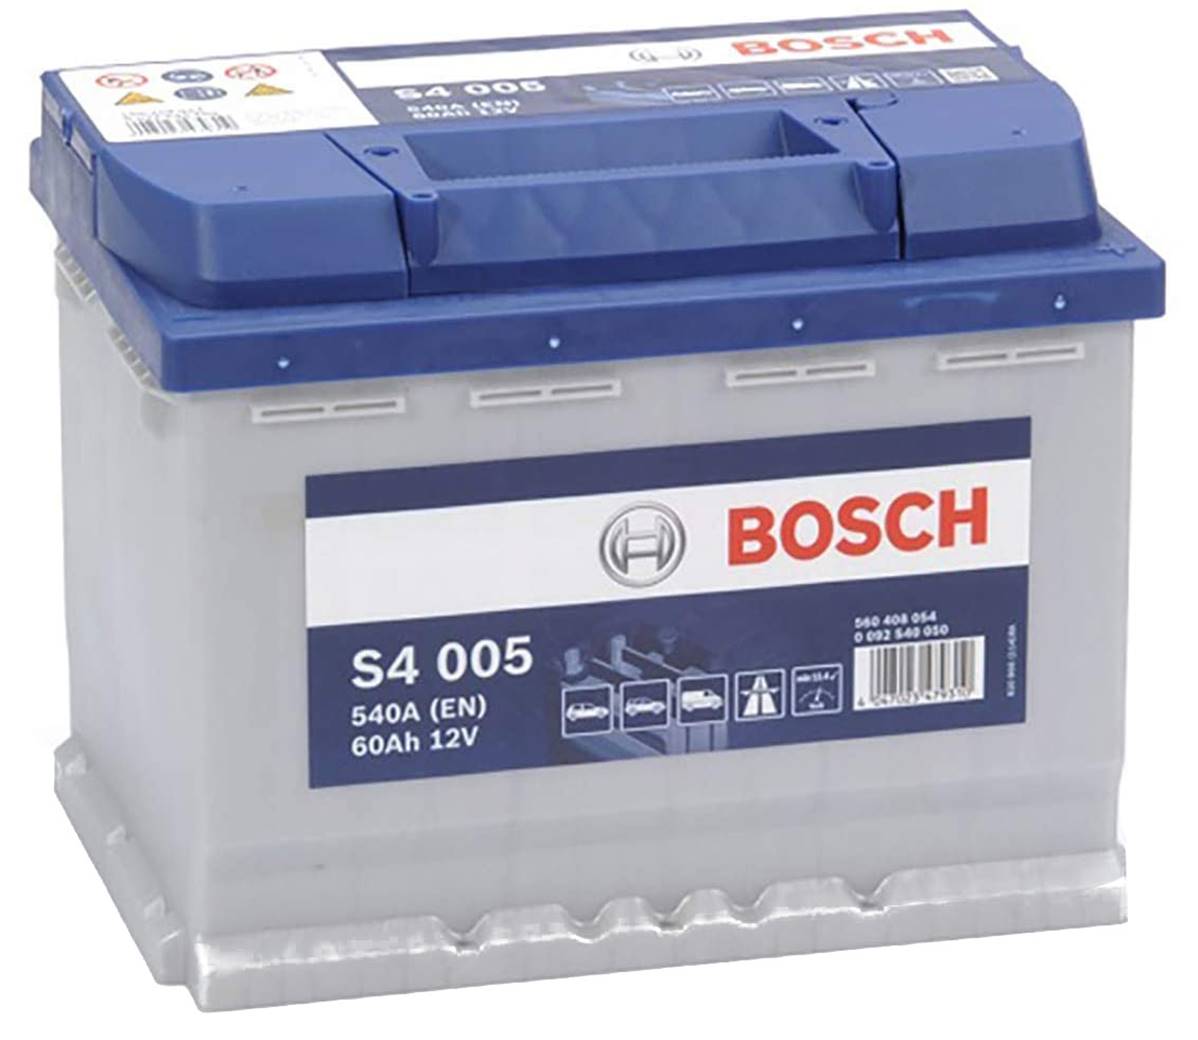 Batterie de démarrage BOSCH : Voiture, VL, Automobile.